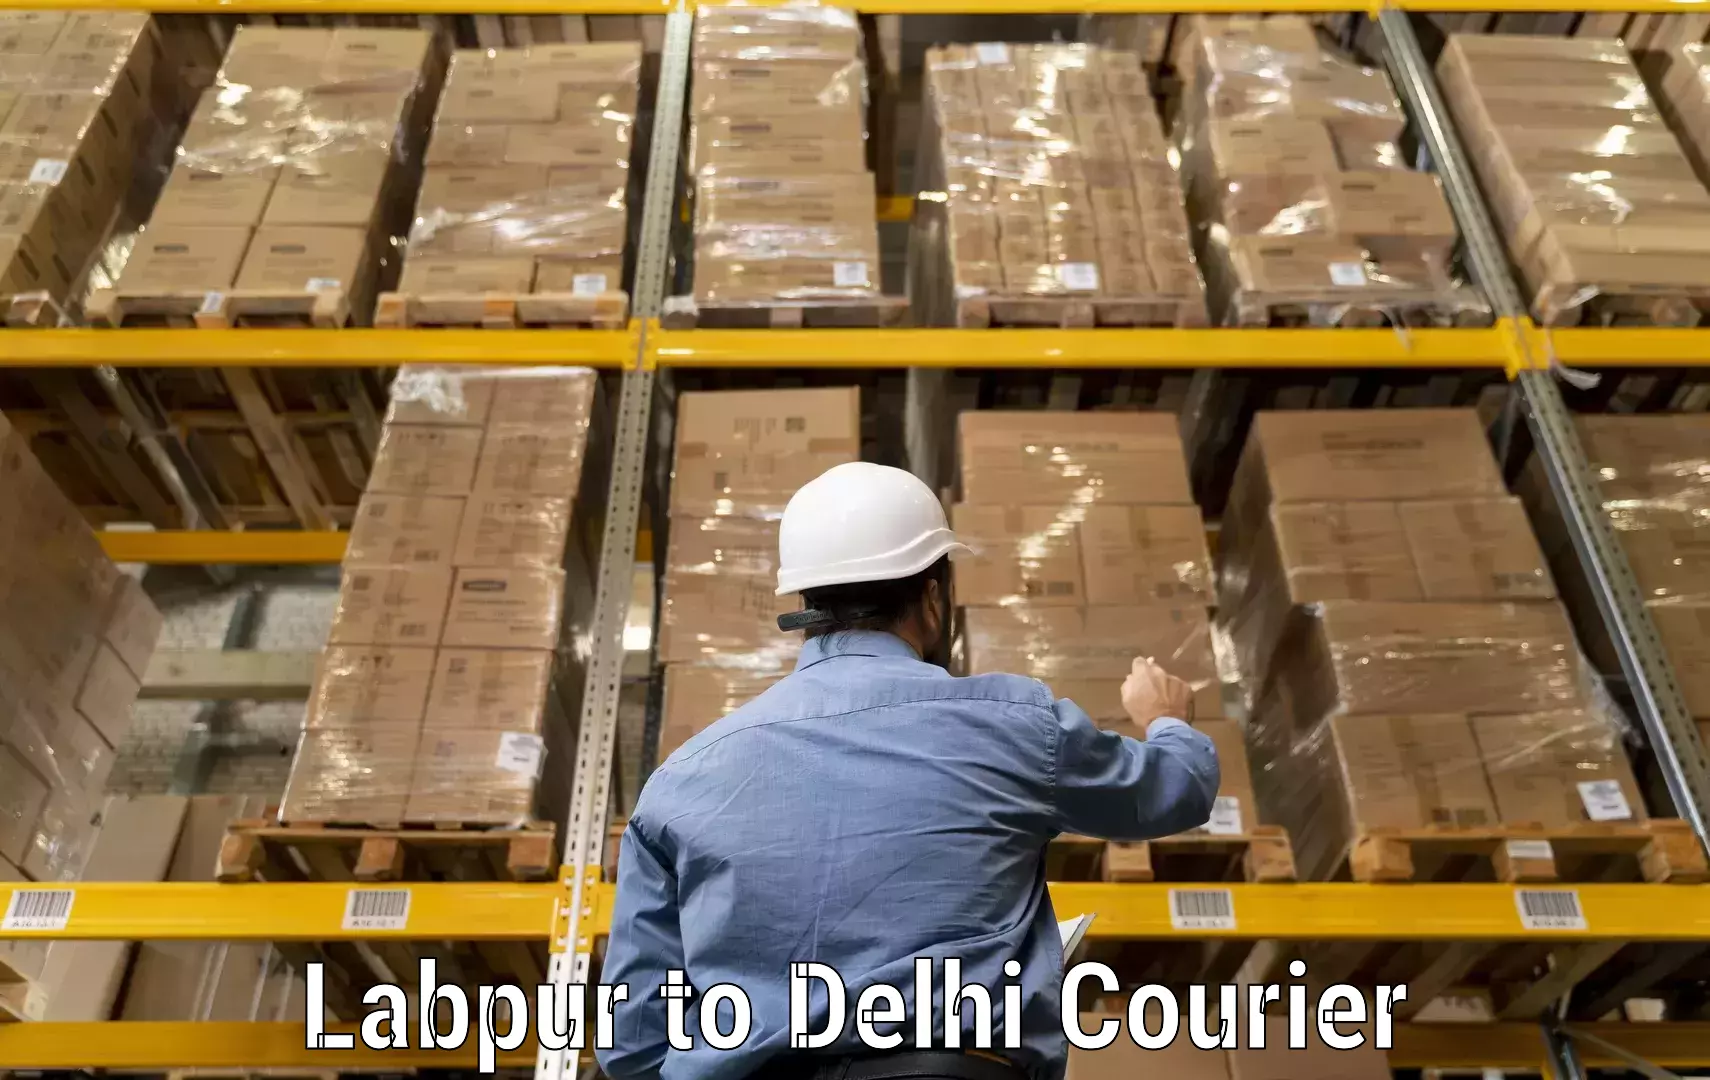 24-hour courier service Labpur to Sansad Marg